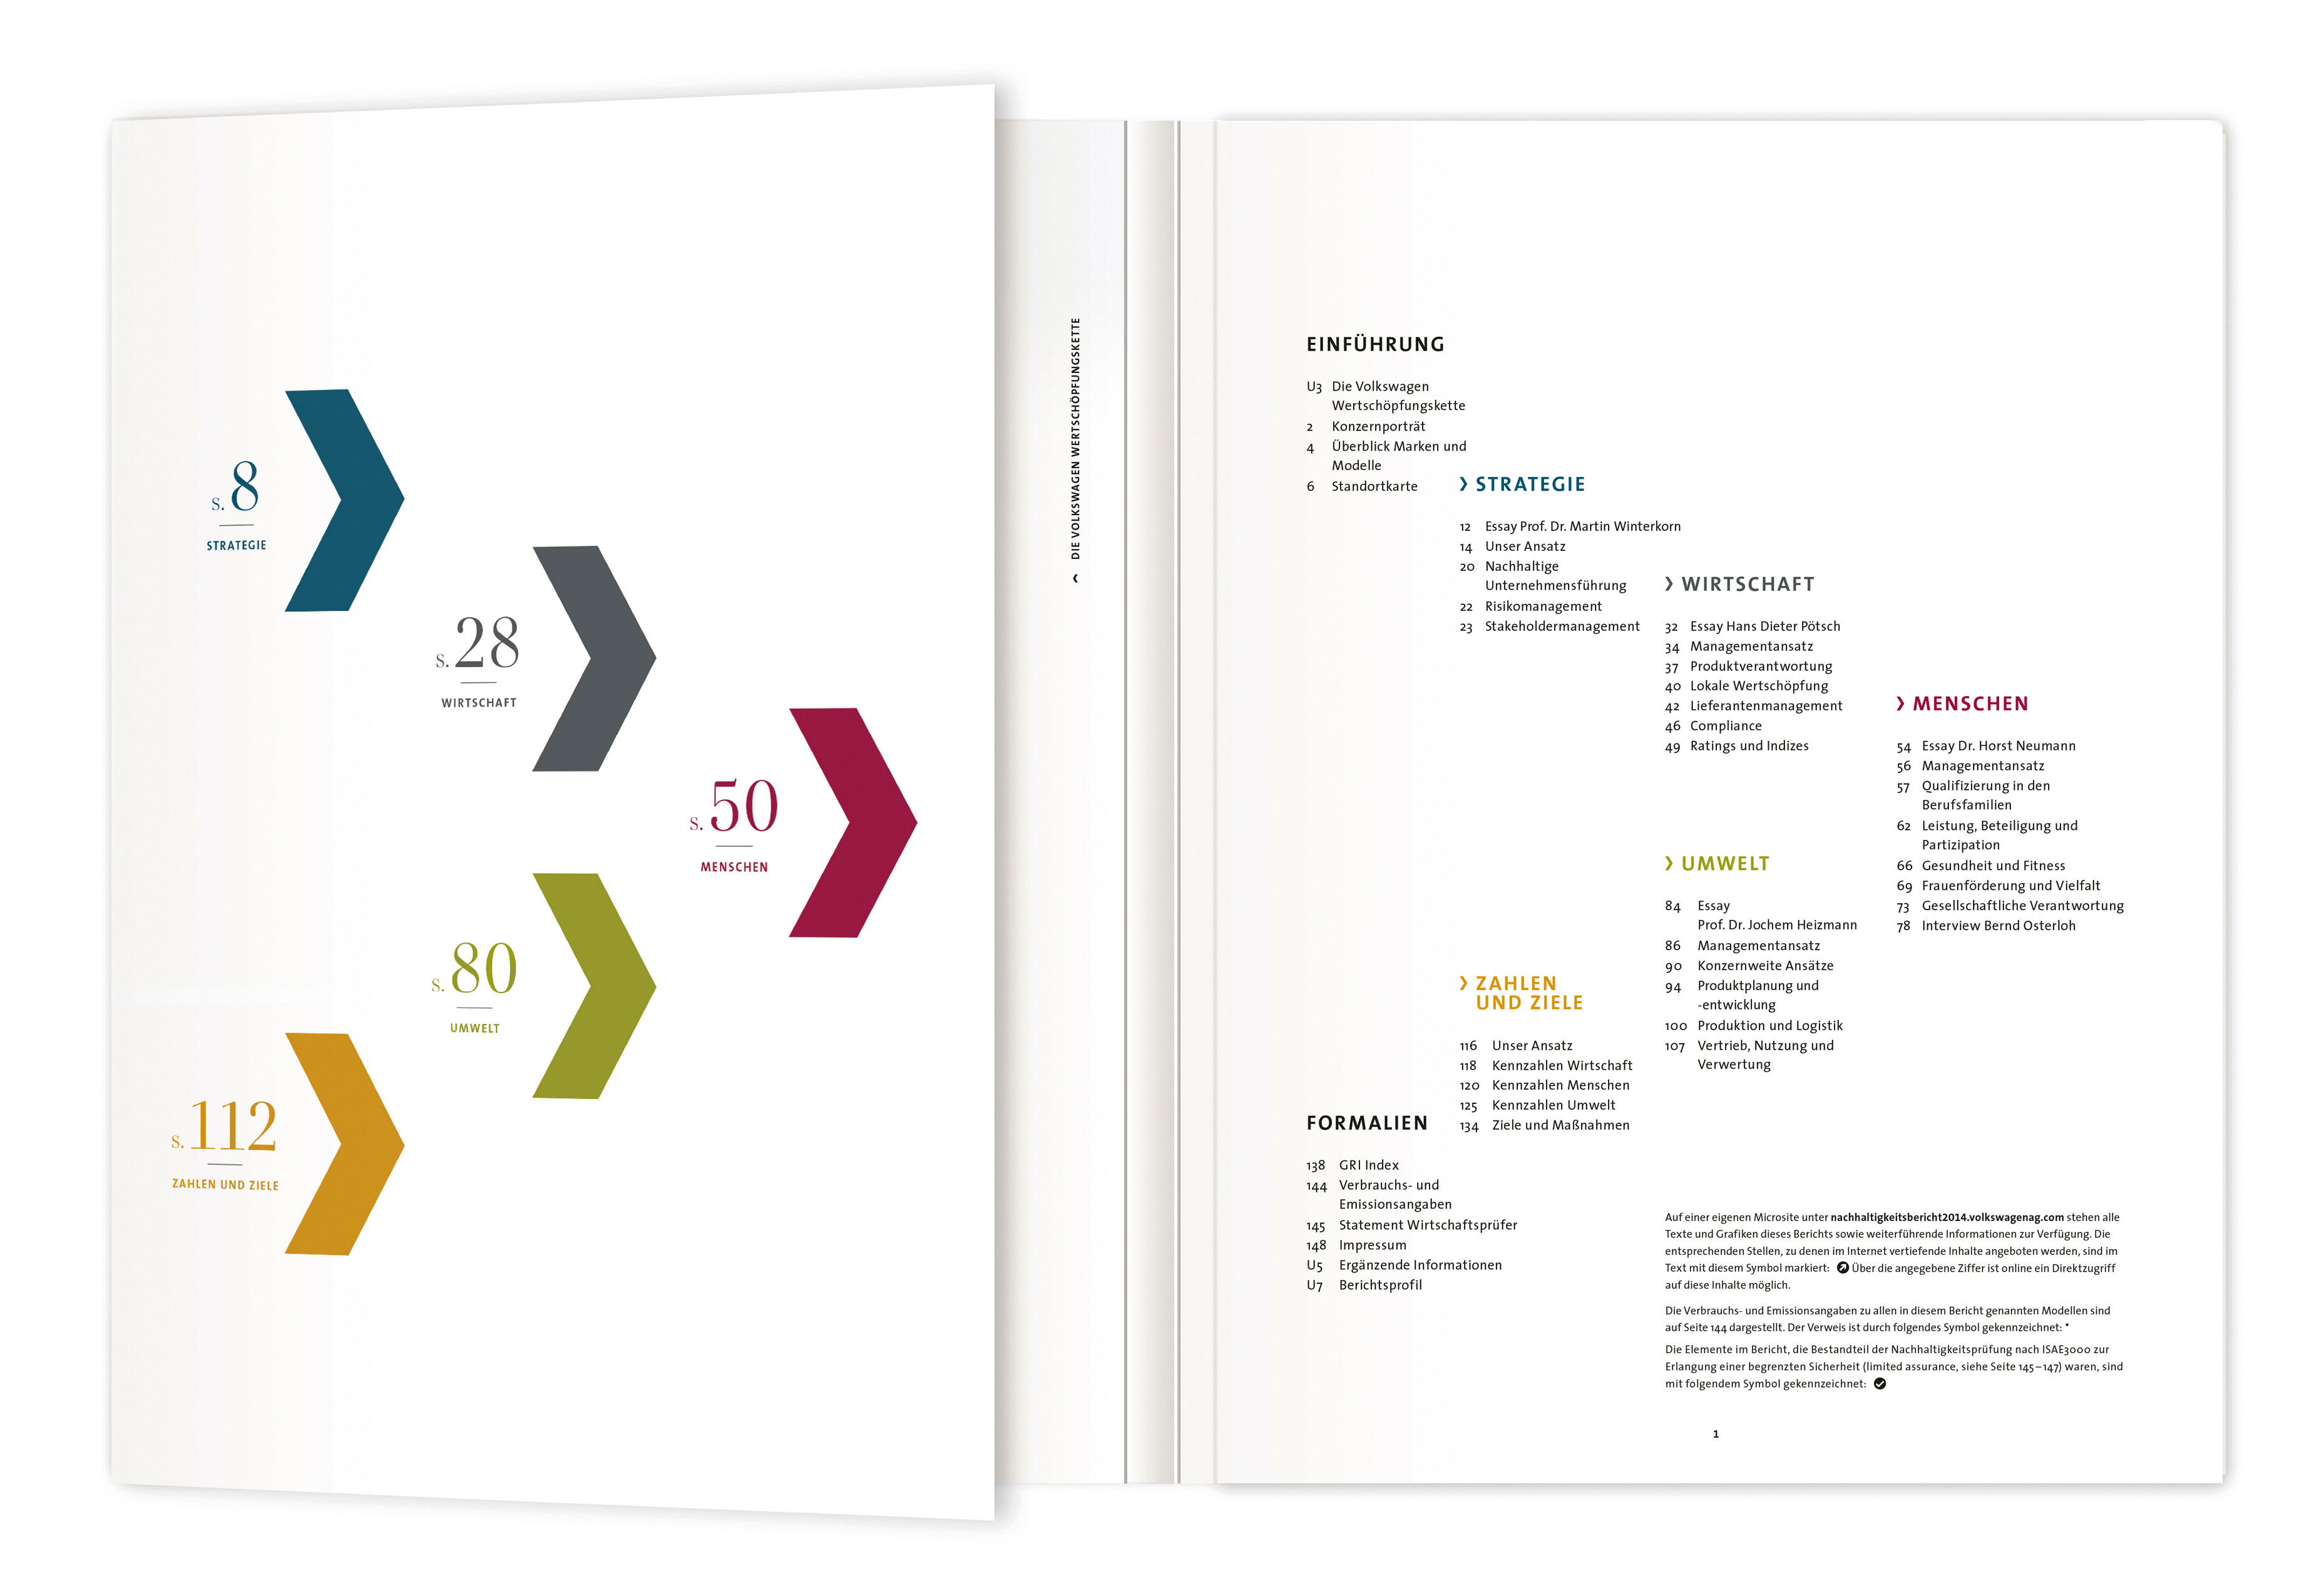 Volkswagen Sustainability Report 2014